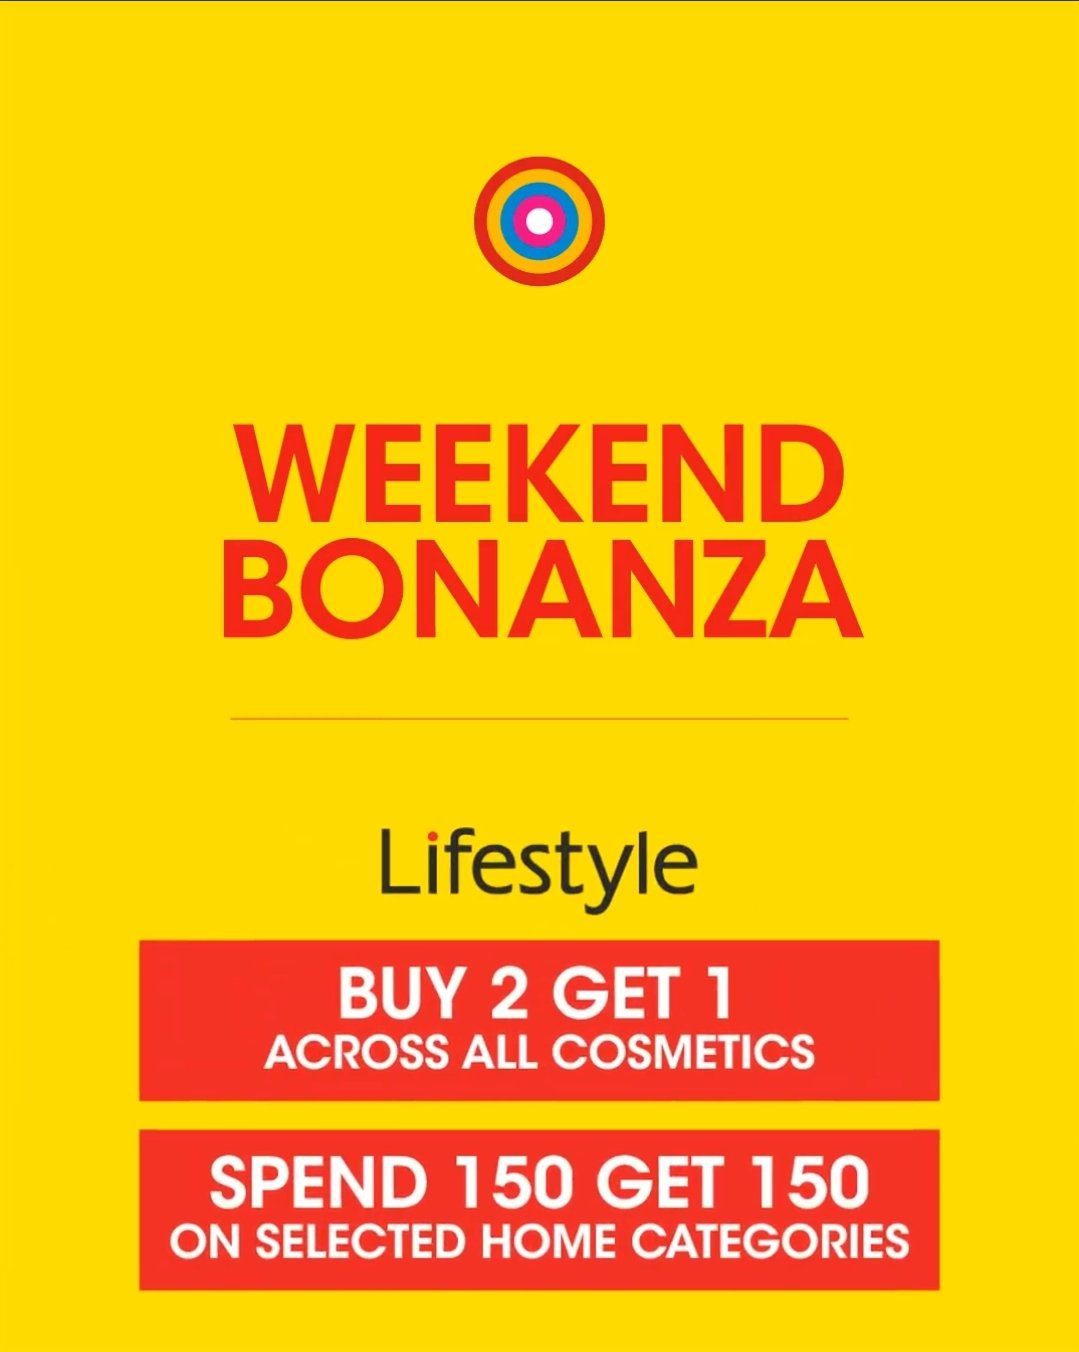 screenshot 20210225 113026 facebook4476783924377674421 Centrepoint Weekend Bonanza offers!